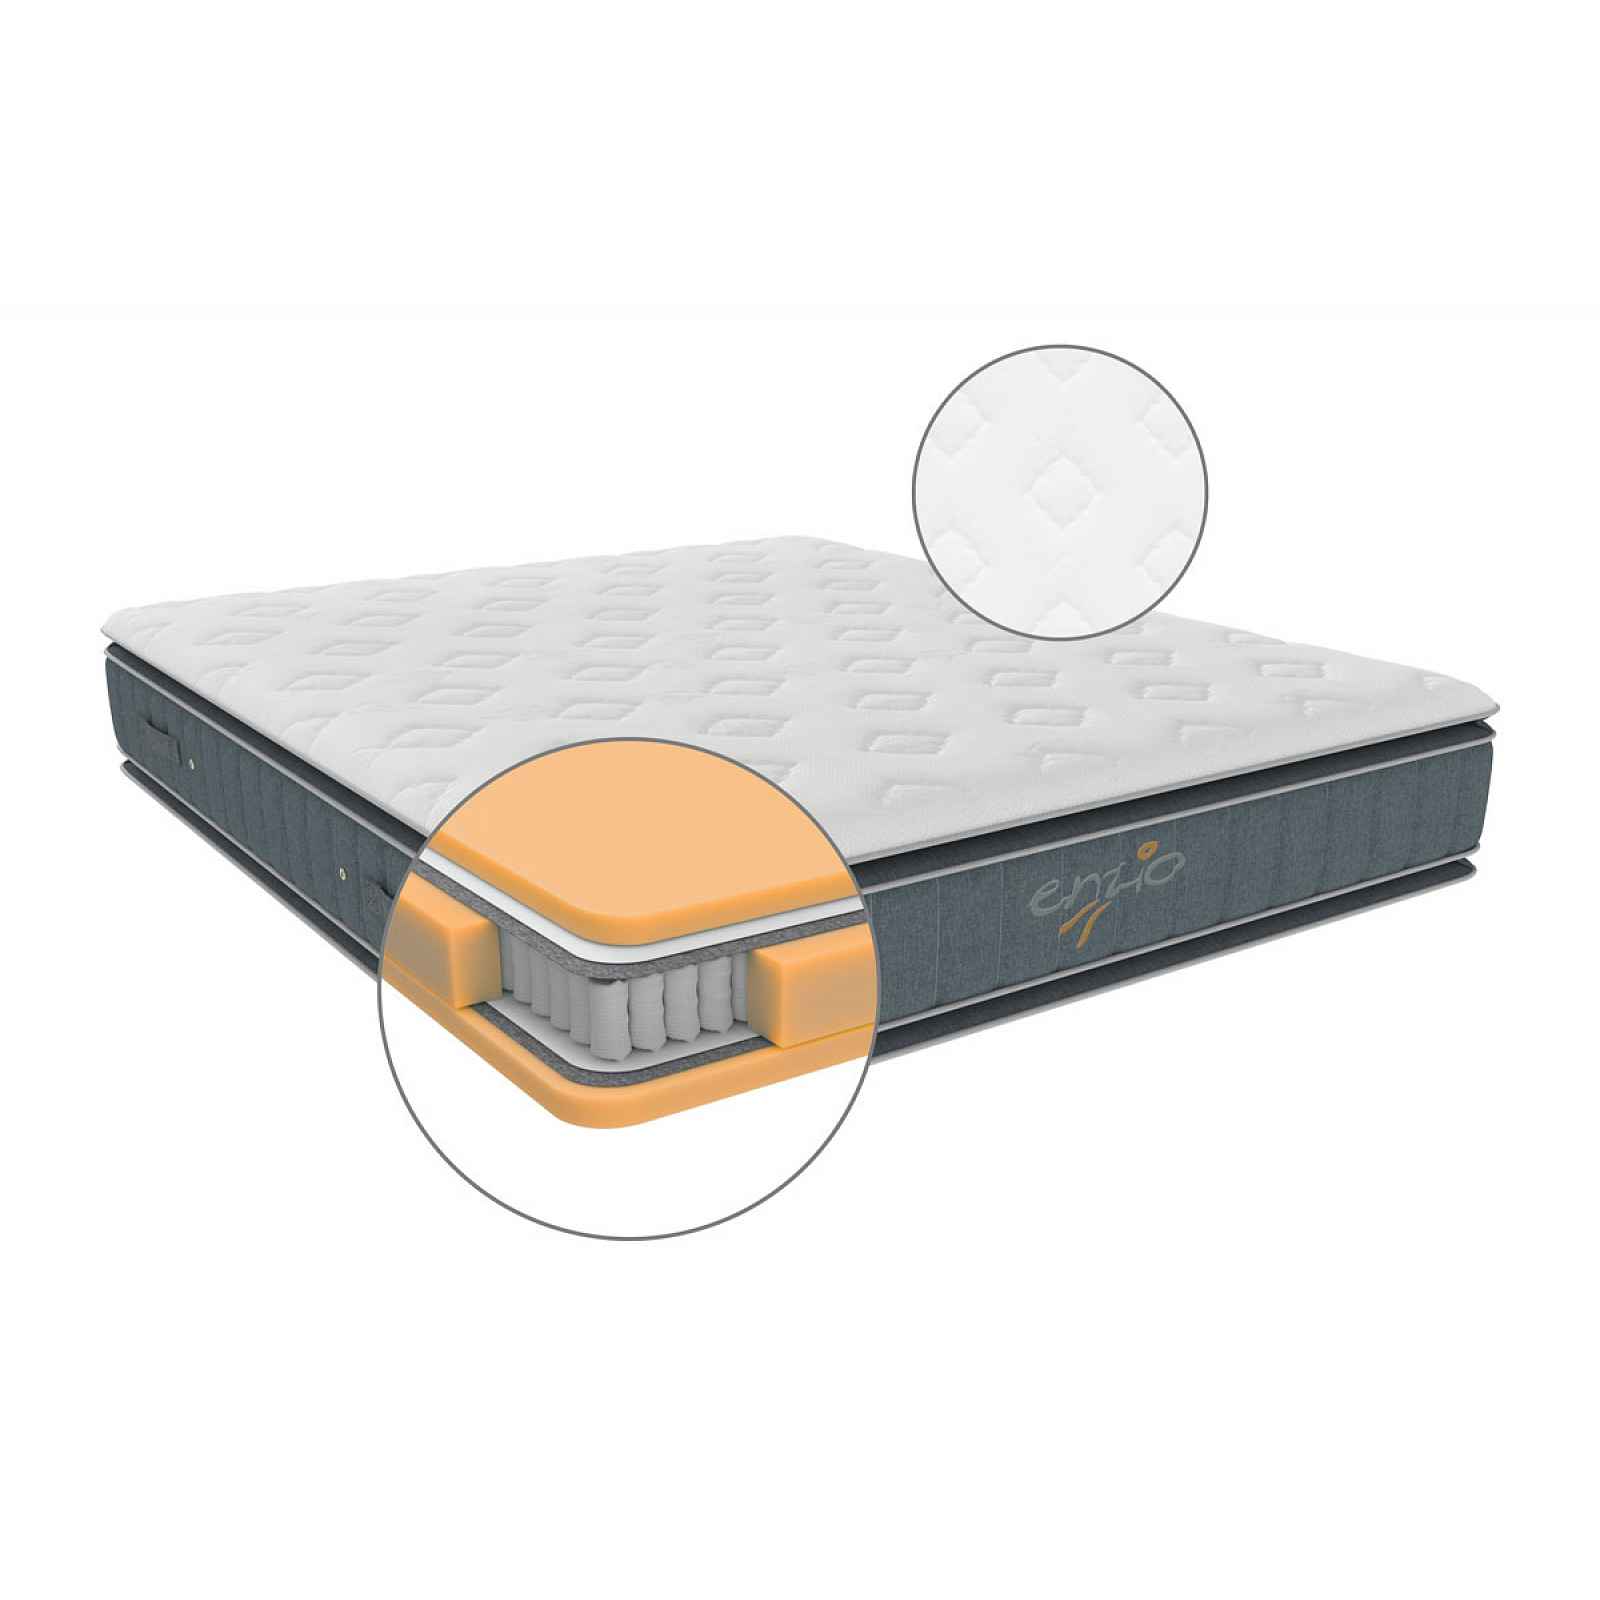 Matrace ATLANTA 2.0 vhodná pro boxspringové postele s dvěma pocity tuhosti 80x200 cm